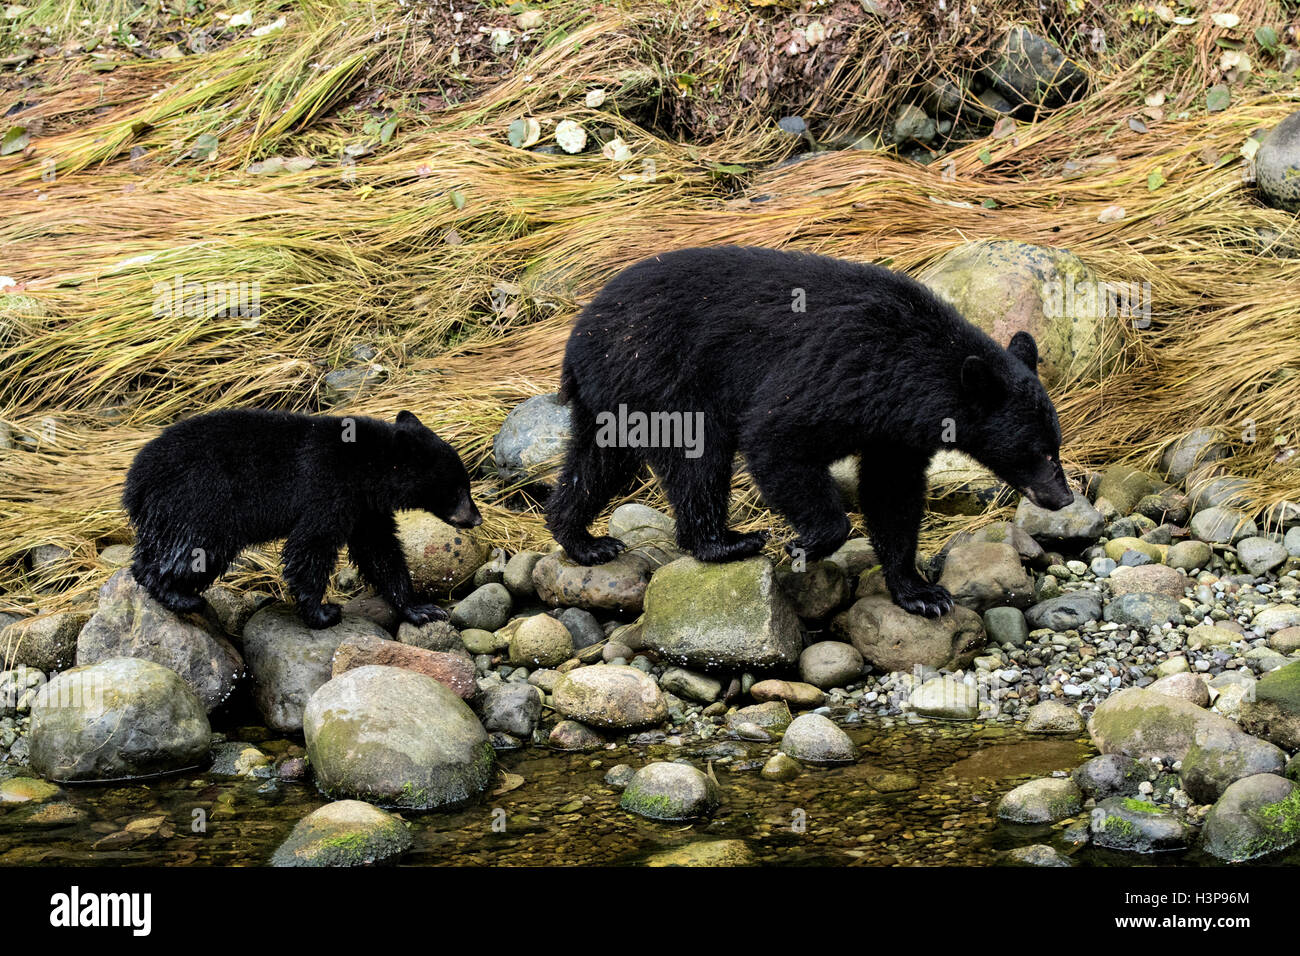 L'ours noir (Ursus americanus) - Thornton Creek, Ucluelet, île de Vancouver, Colombie-Britannique, Canada Banque D'Images